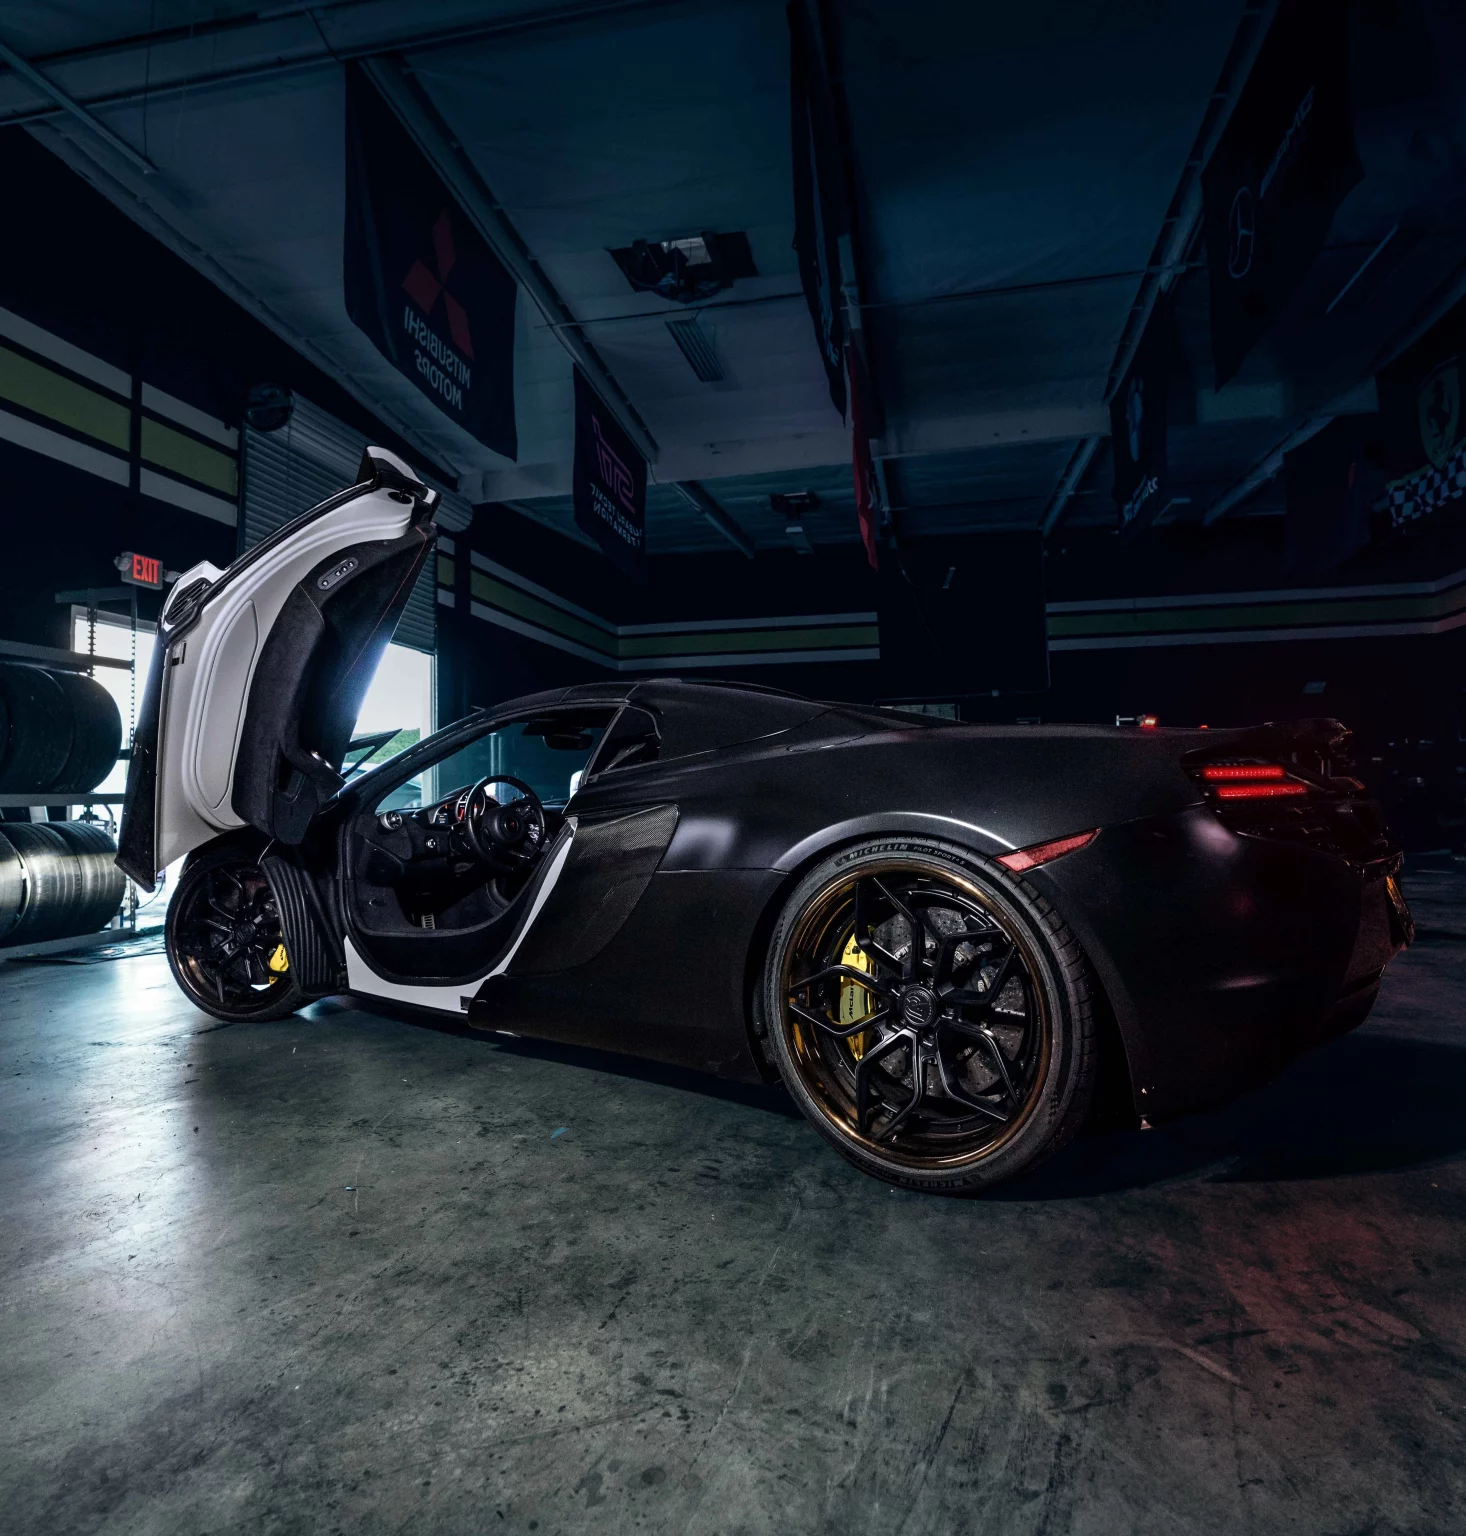 Voiture de sport de luxe noire avec portes papillon ouvertes dans un garage sombre.